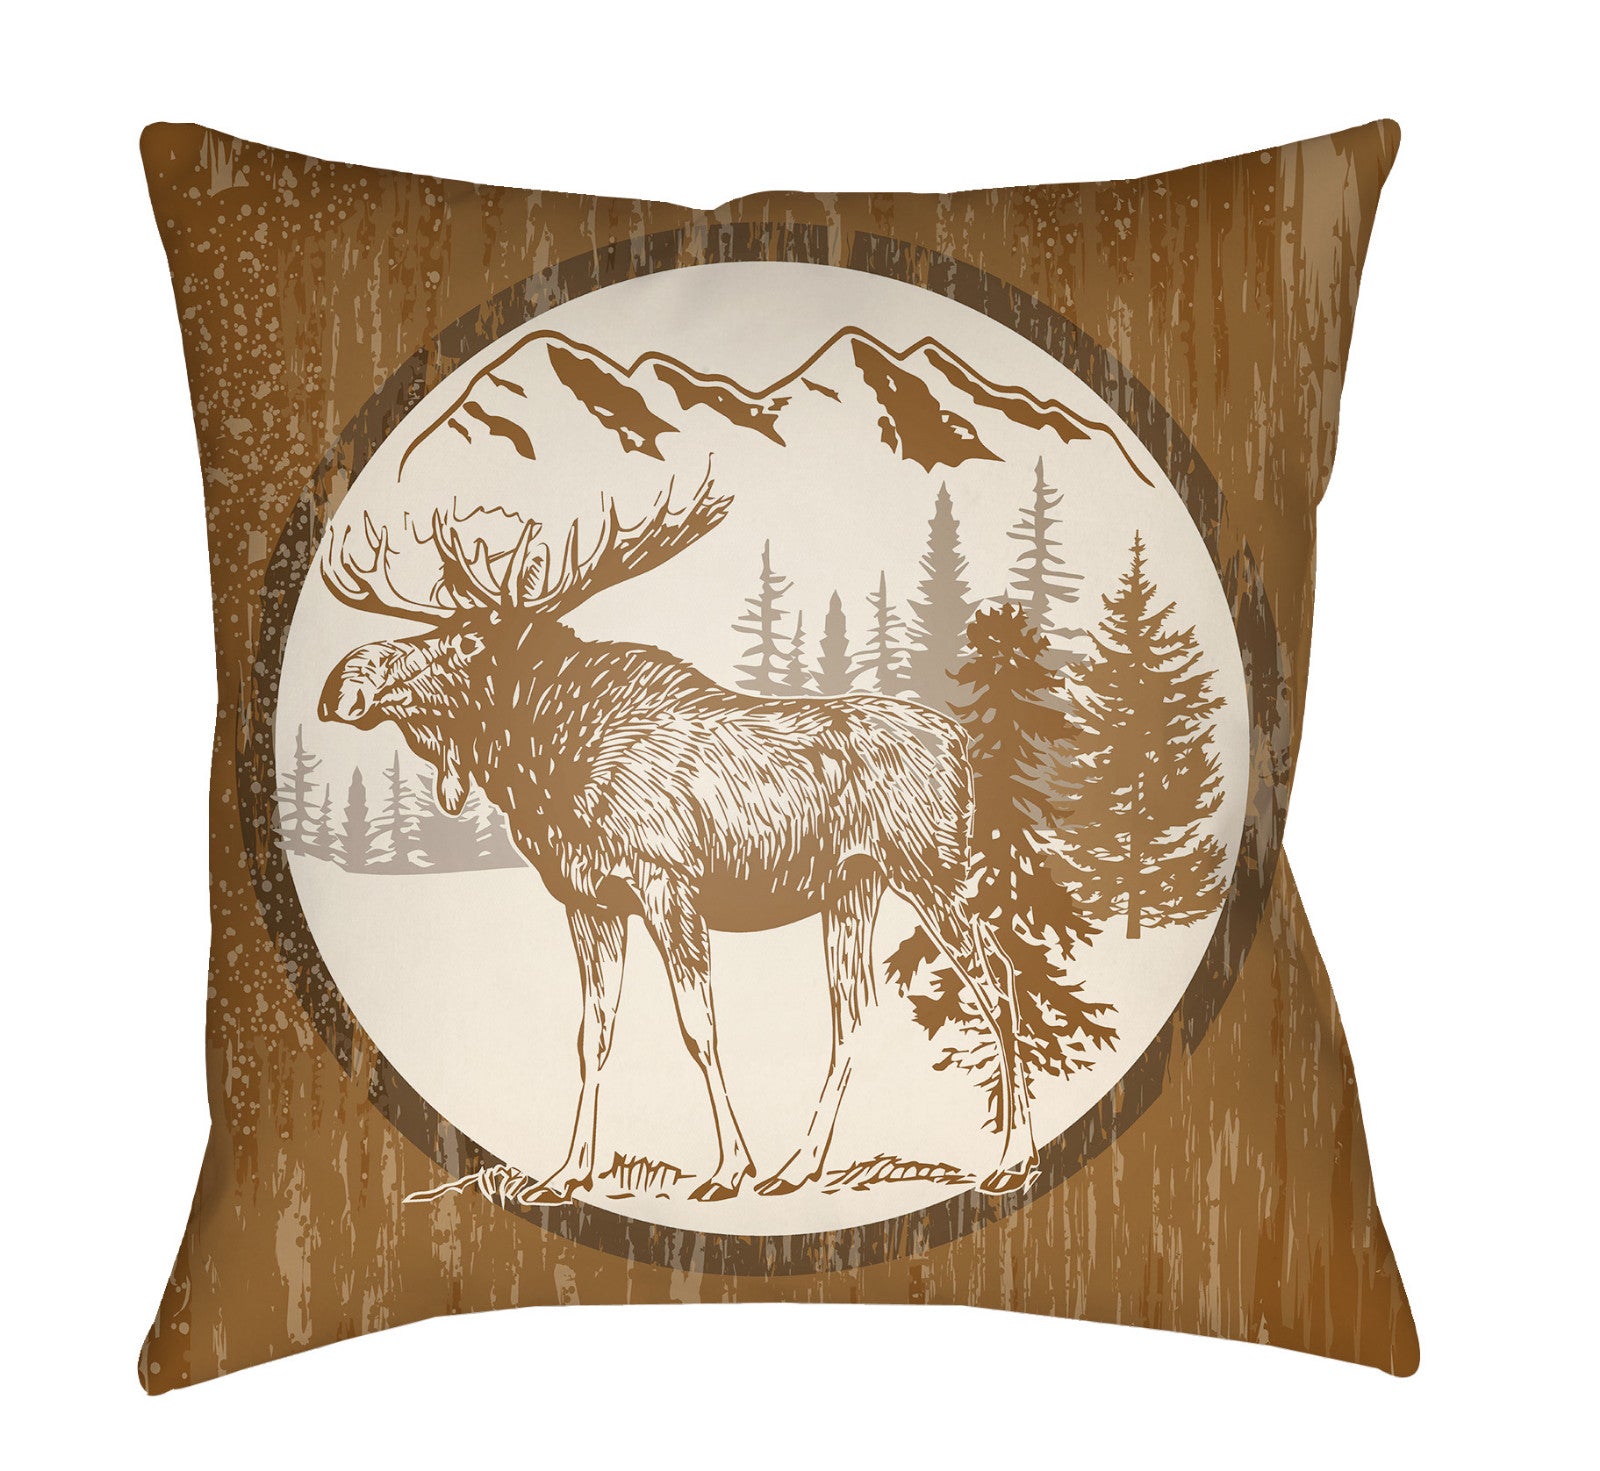 Artistic Weavers Lodge Cabin Moose Tan/Beige main image